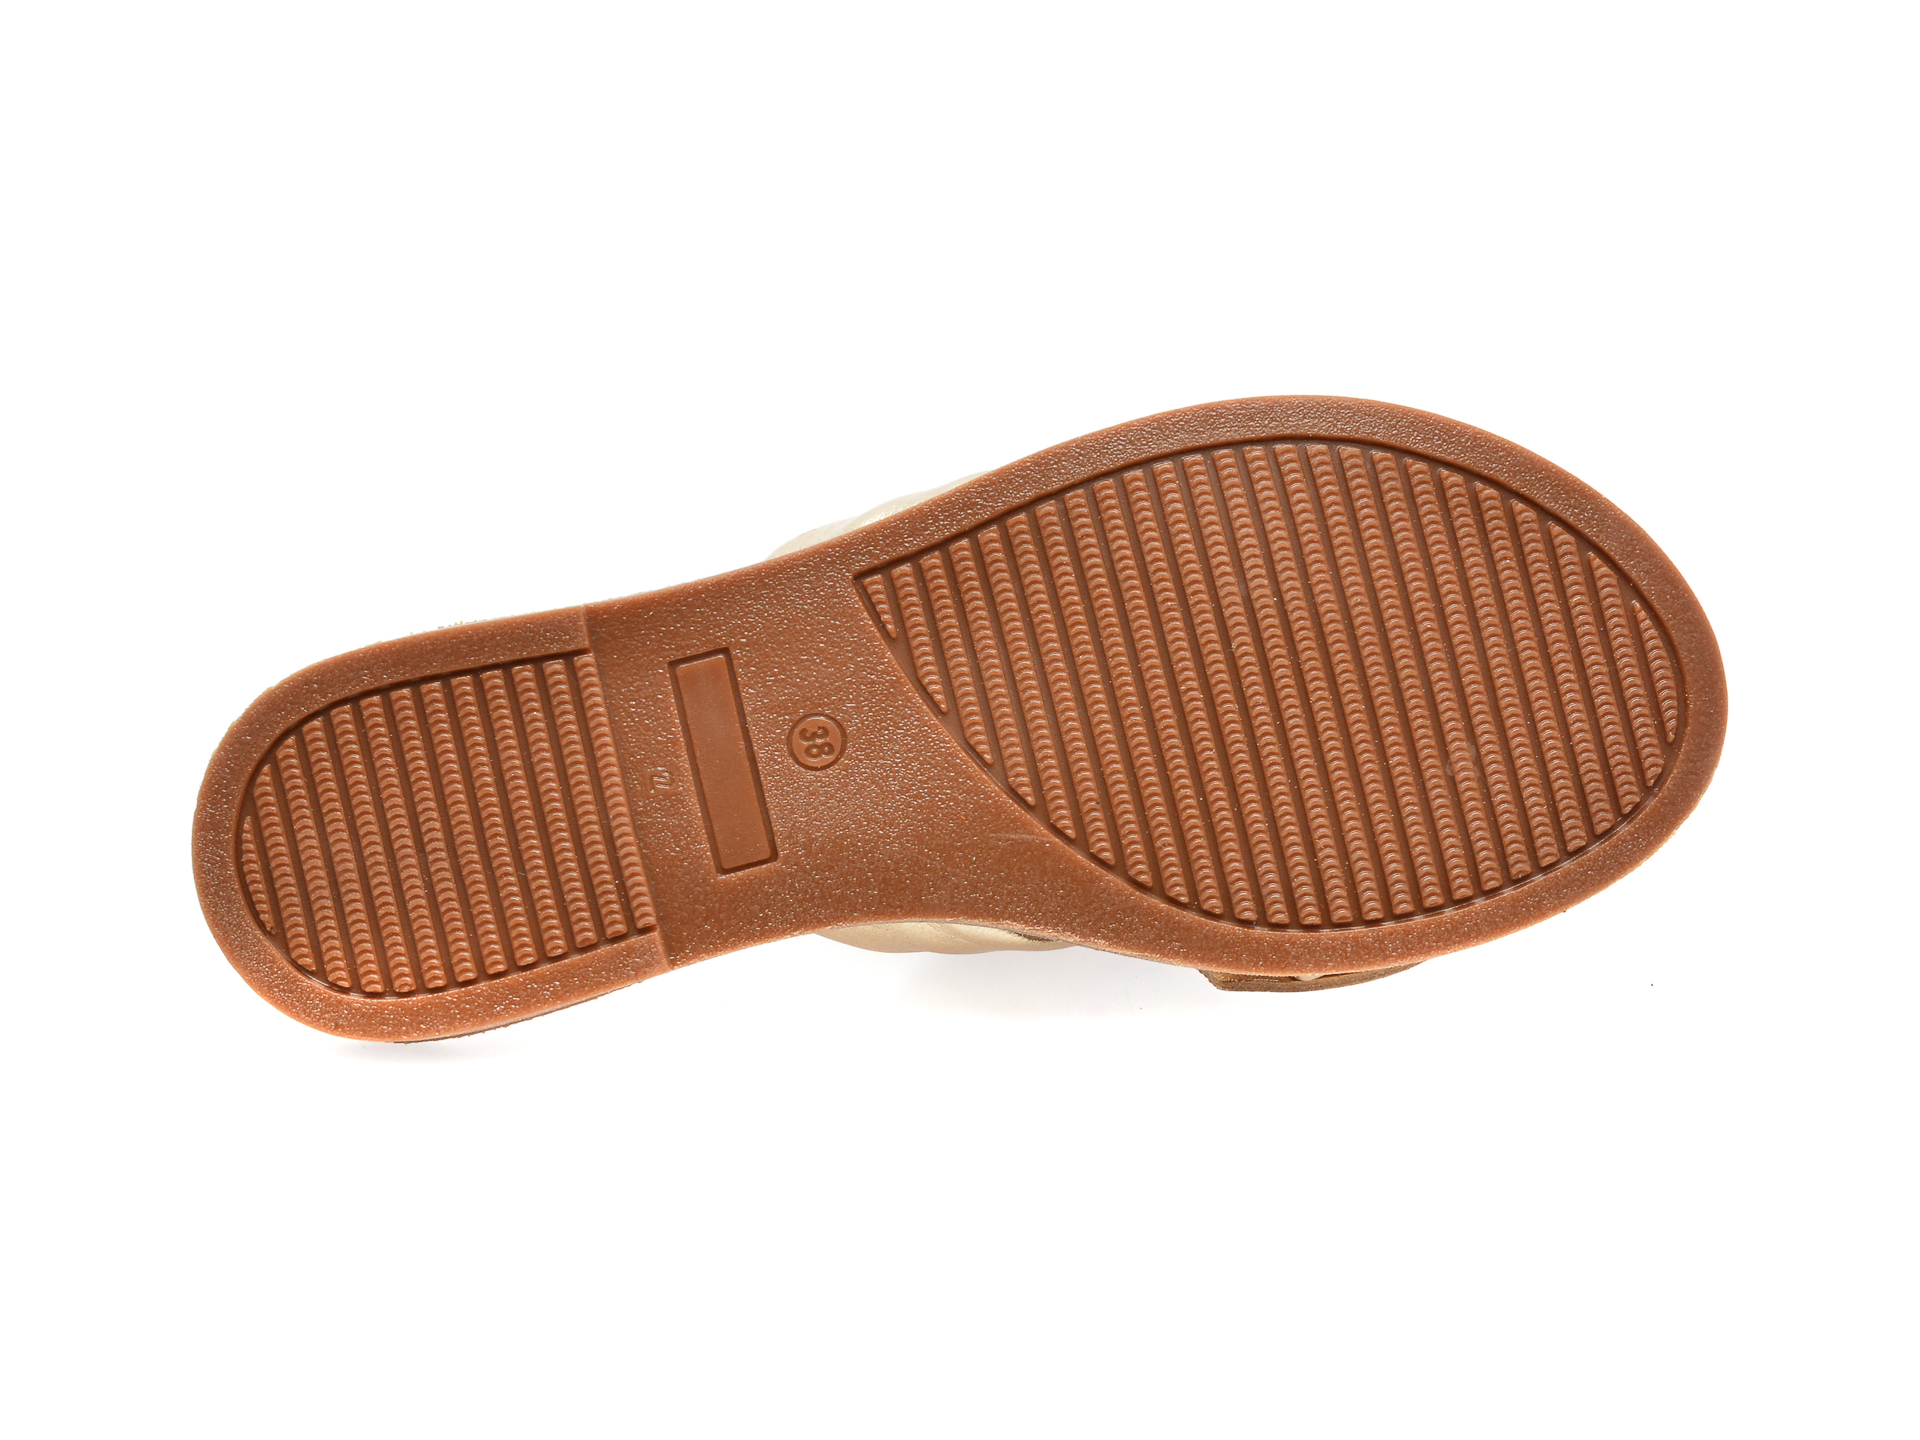 Papuci FLAVIA PASSINI aurii, 210011, din piele naturala